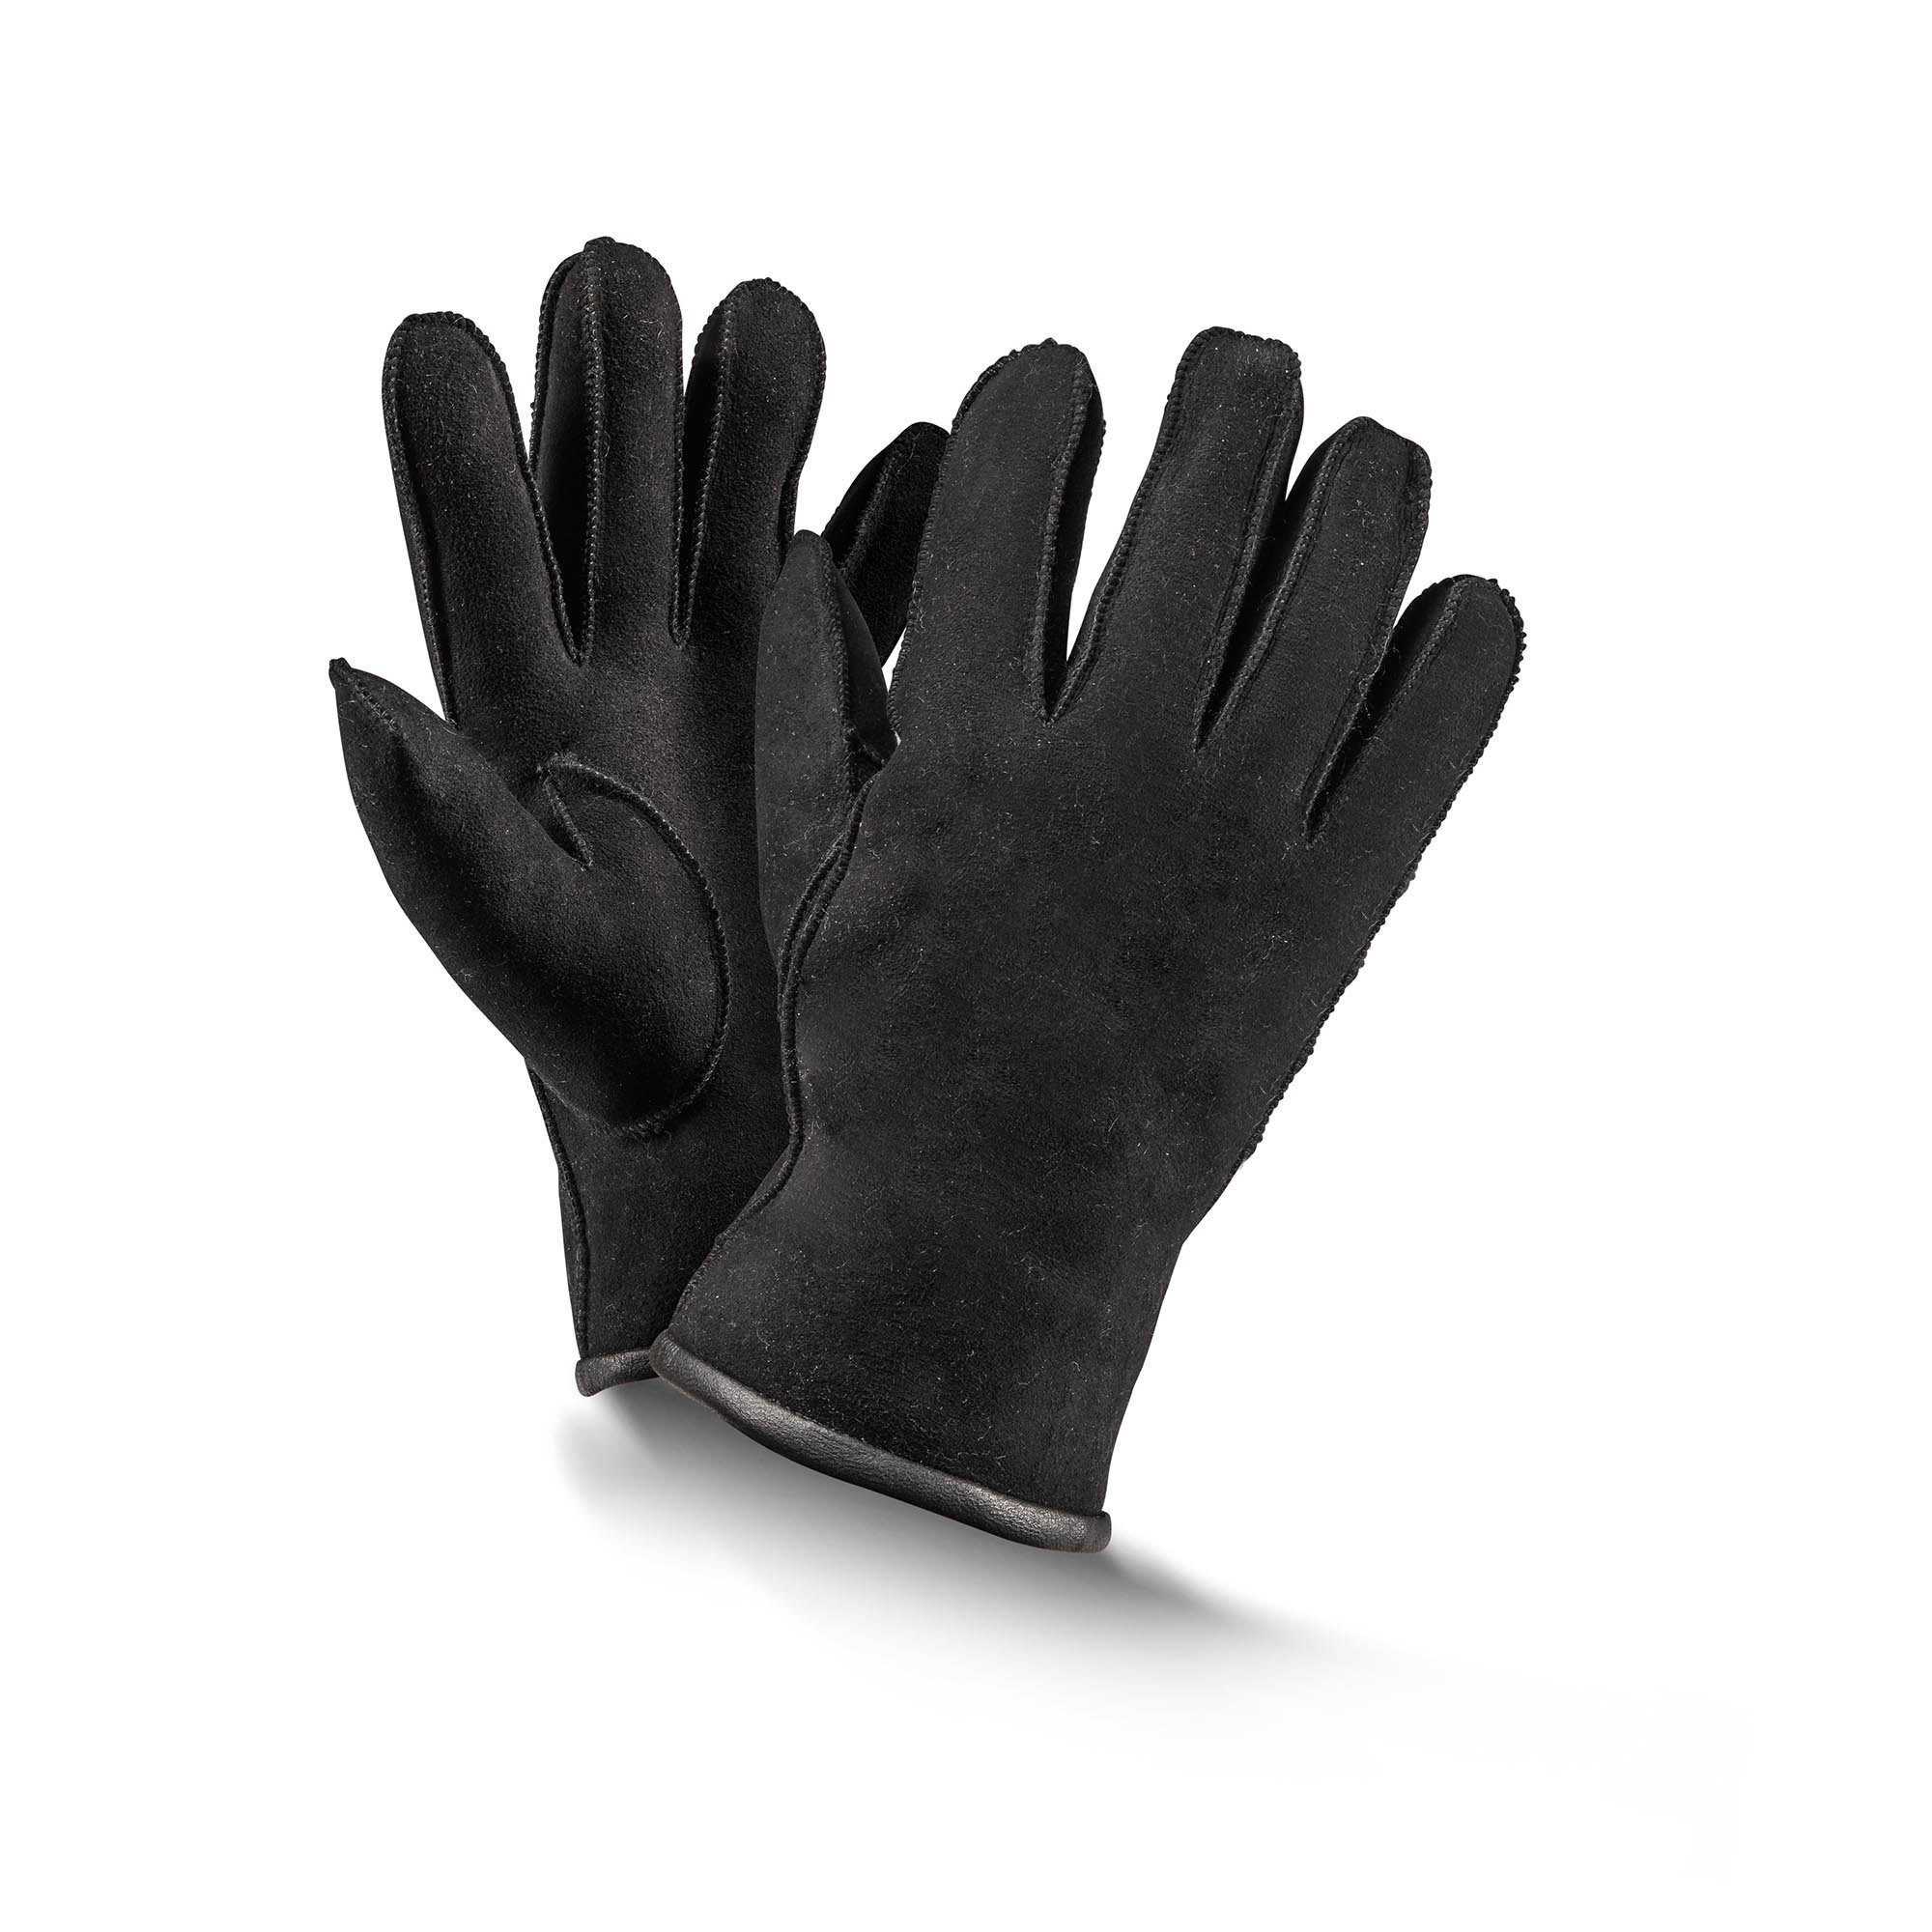 grau Handschuhe braun/ 6-10 schwarz/ Fingerhandschuhe Baumwollhandschuhe Gr Fellhof Basic